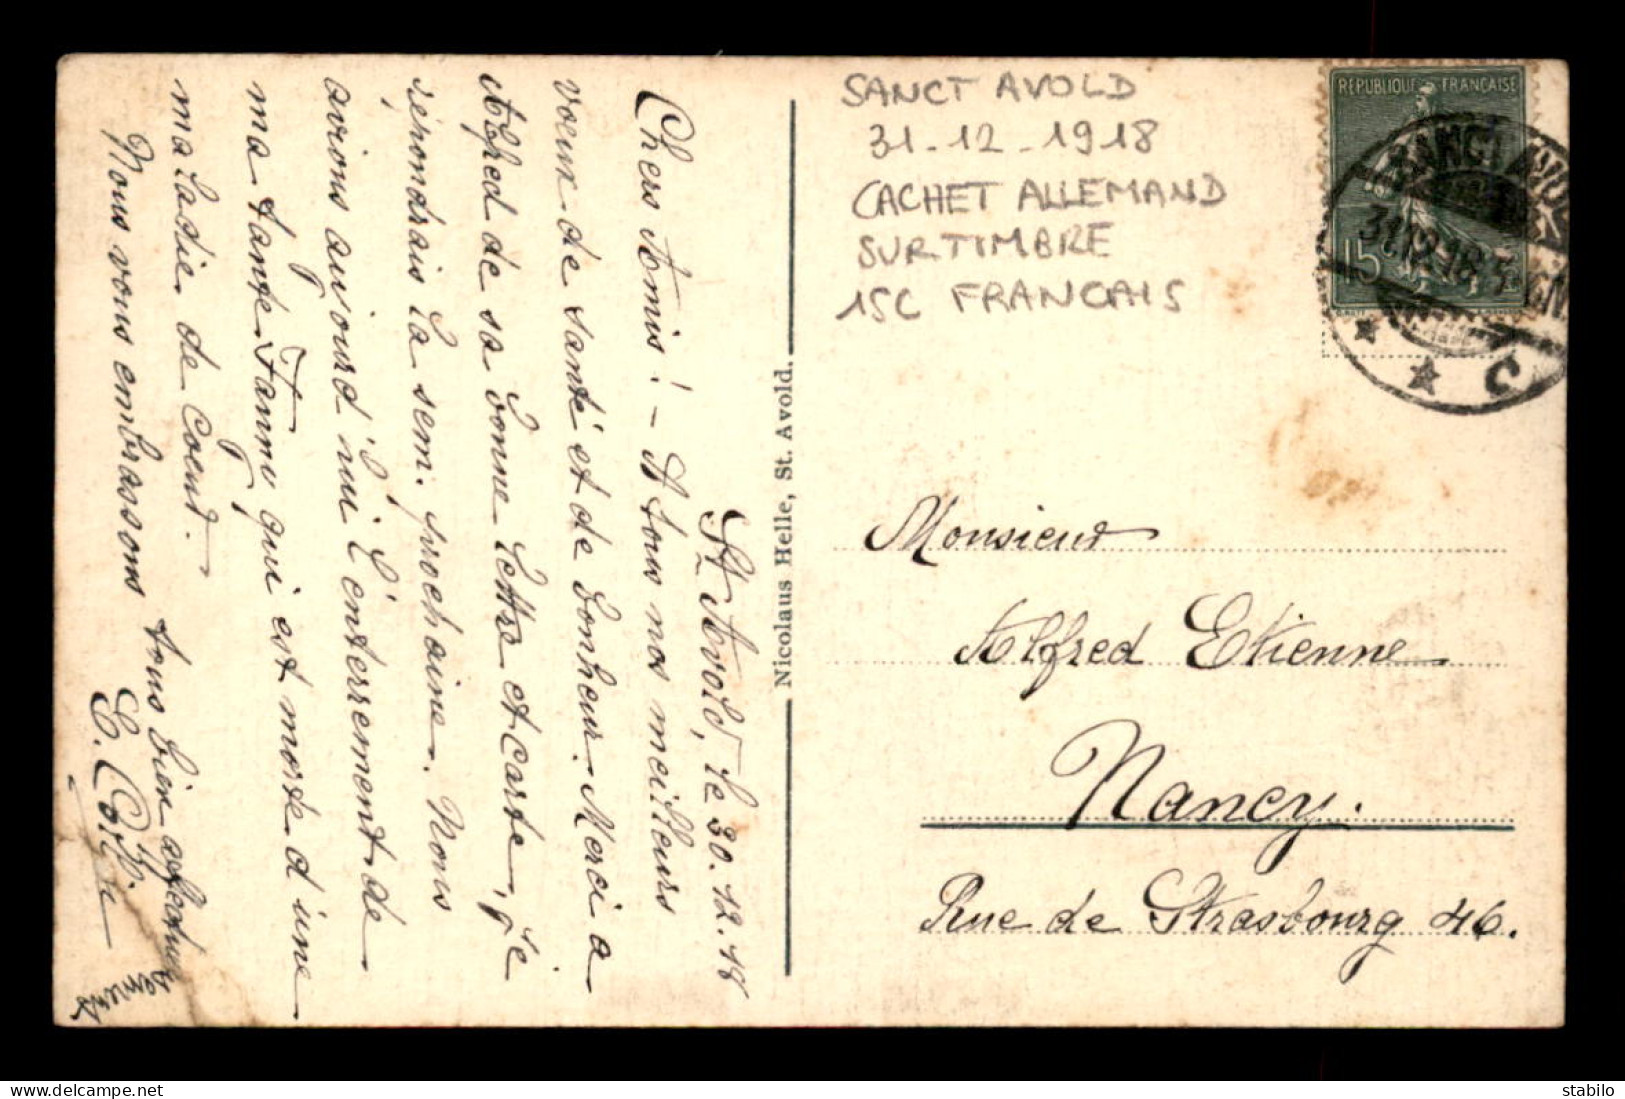 CACHET ALLEMAND "SANCT AVOLD" DU 31.12.1918 SUR TIMBRE FRANCAIS DE 15 CENTIMES - Cachets Provisoires